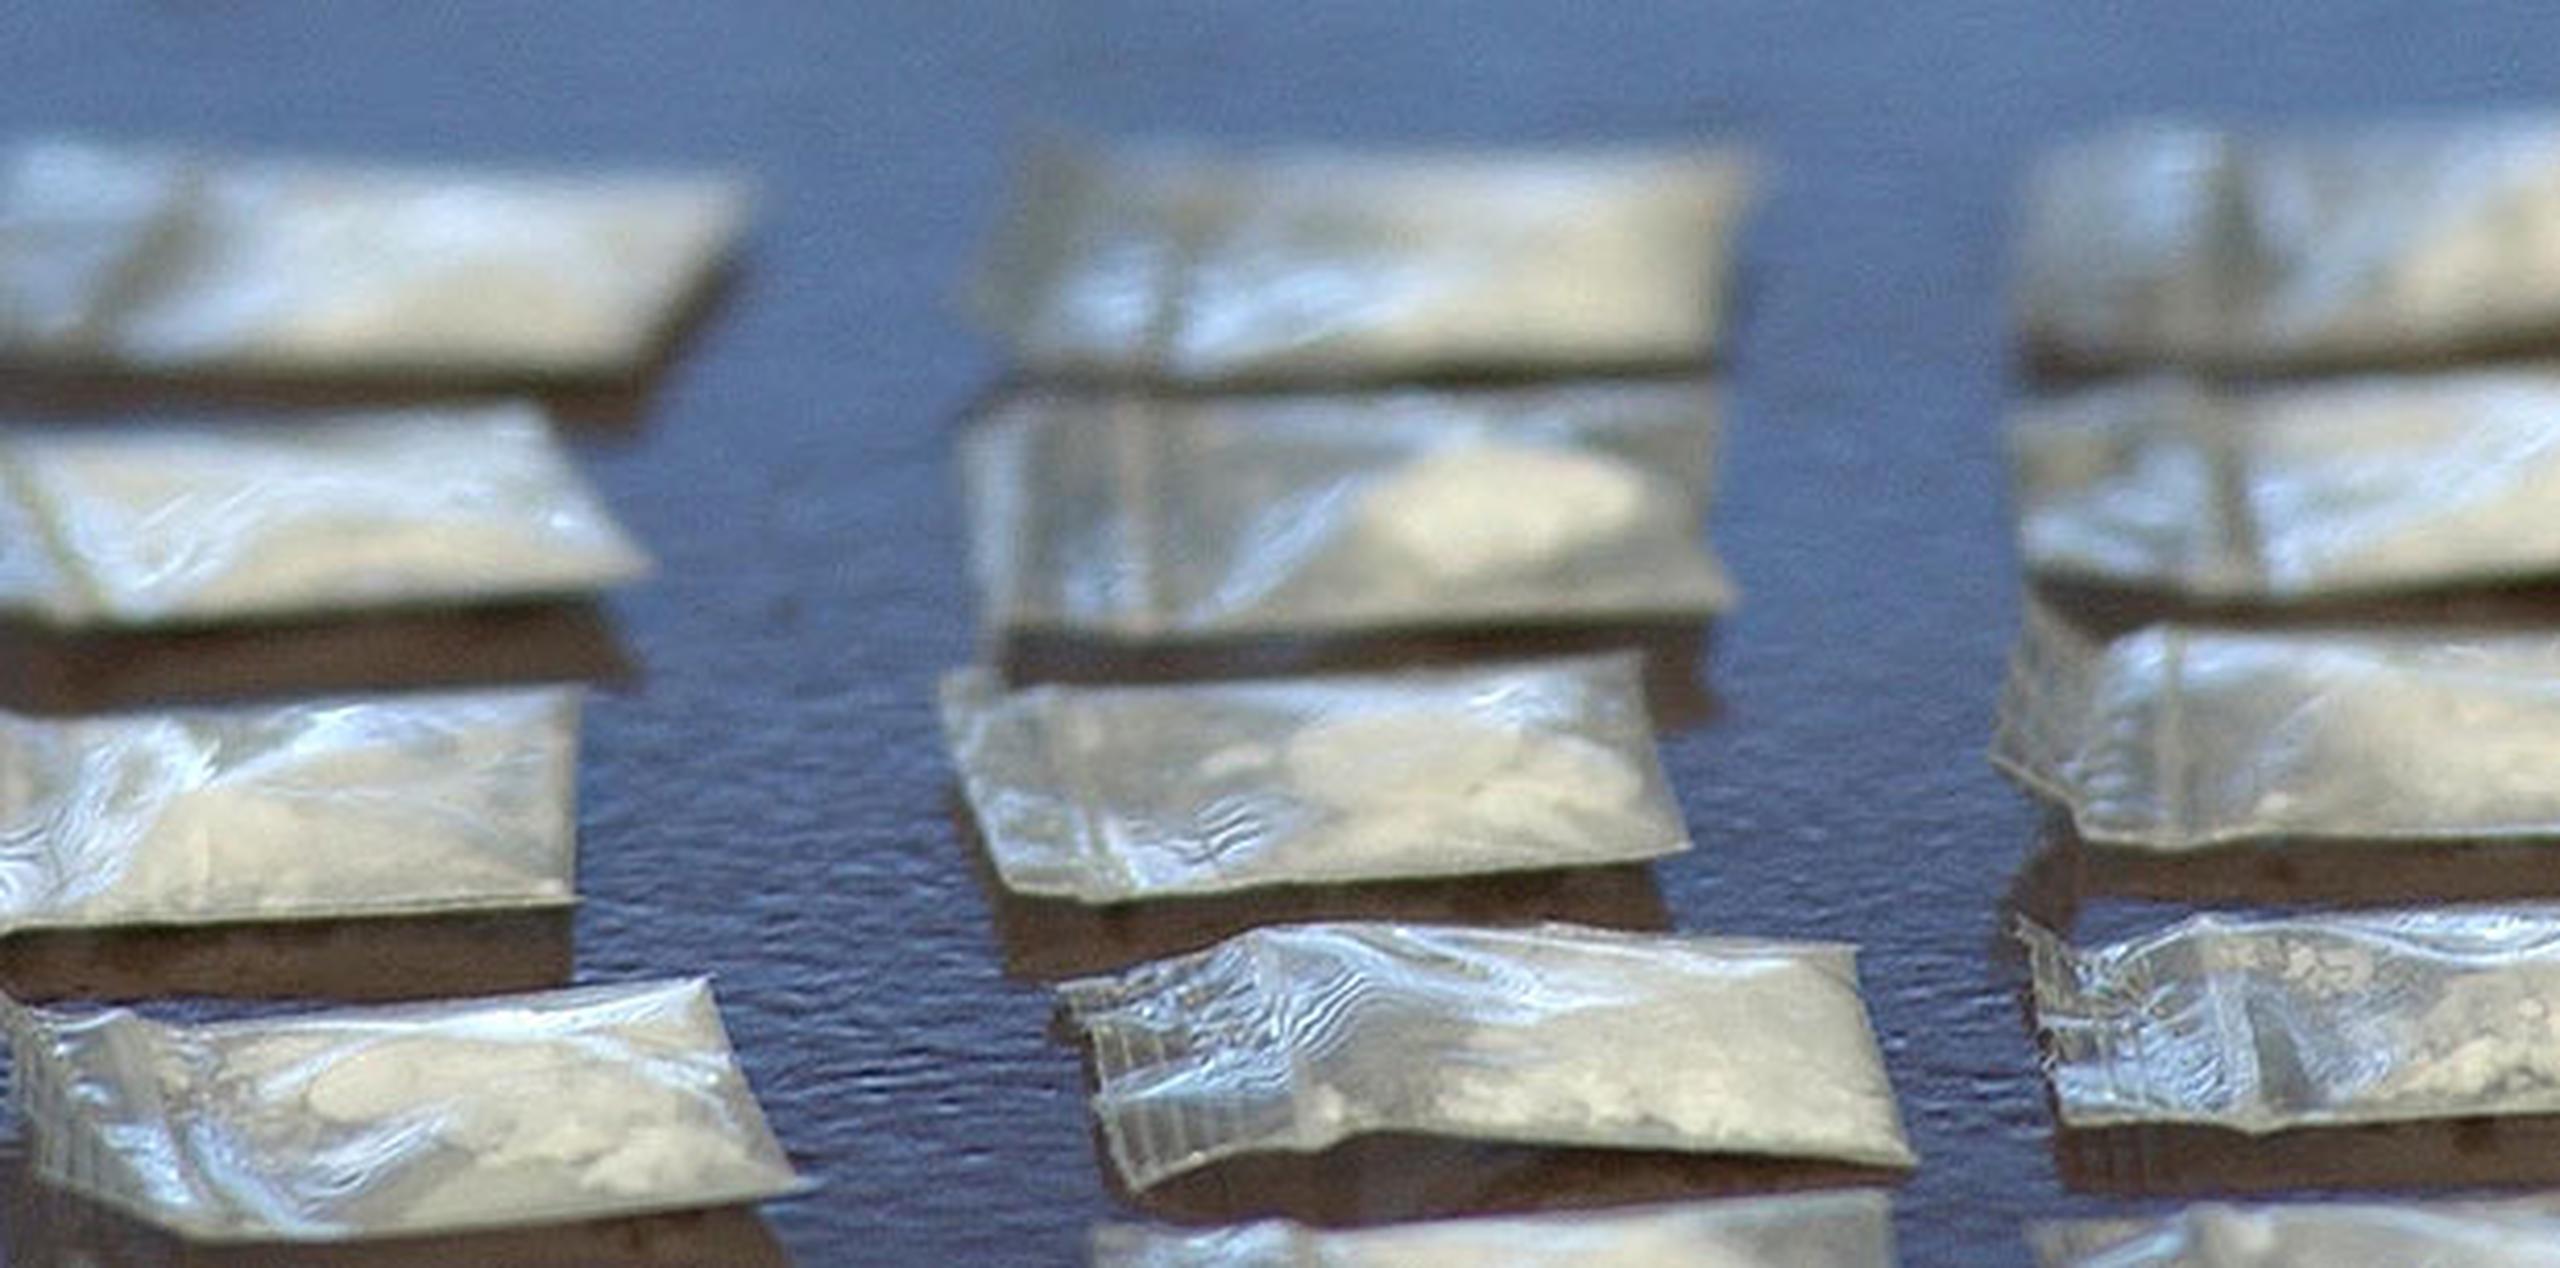 El informe policiaco detalla que los agentes encontraron 10 bolsitas de cocaína y 48 de marihuana, entre otros. (Archivo)